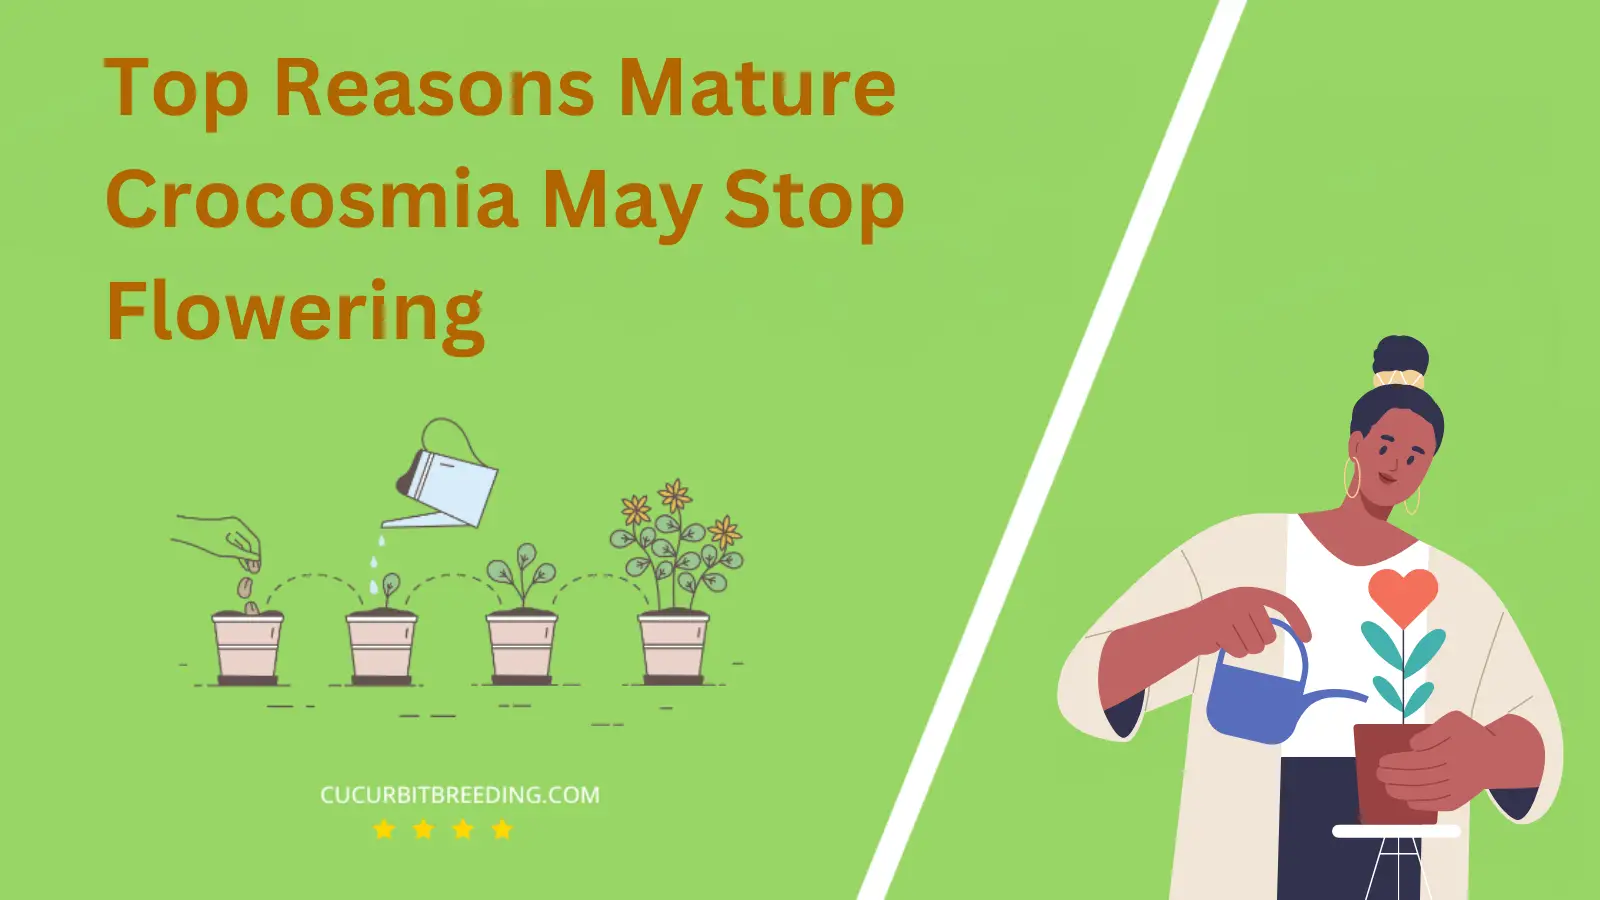 Top Reasons Mature Crocosmia May Stop Flowering